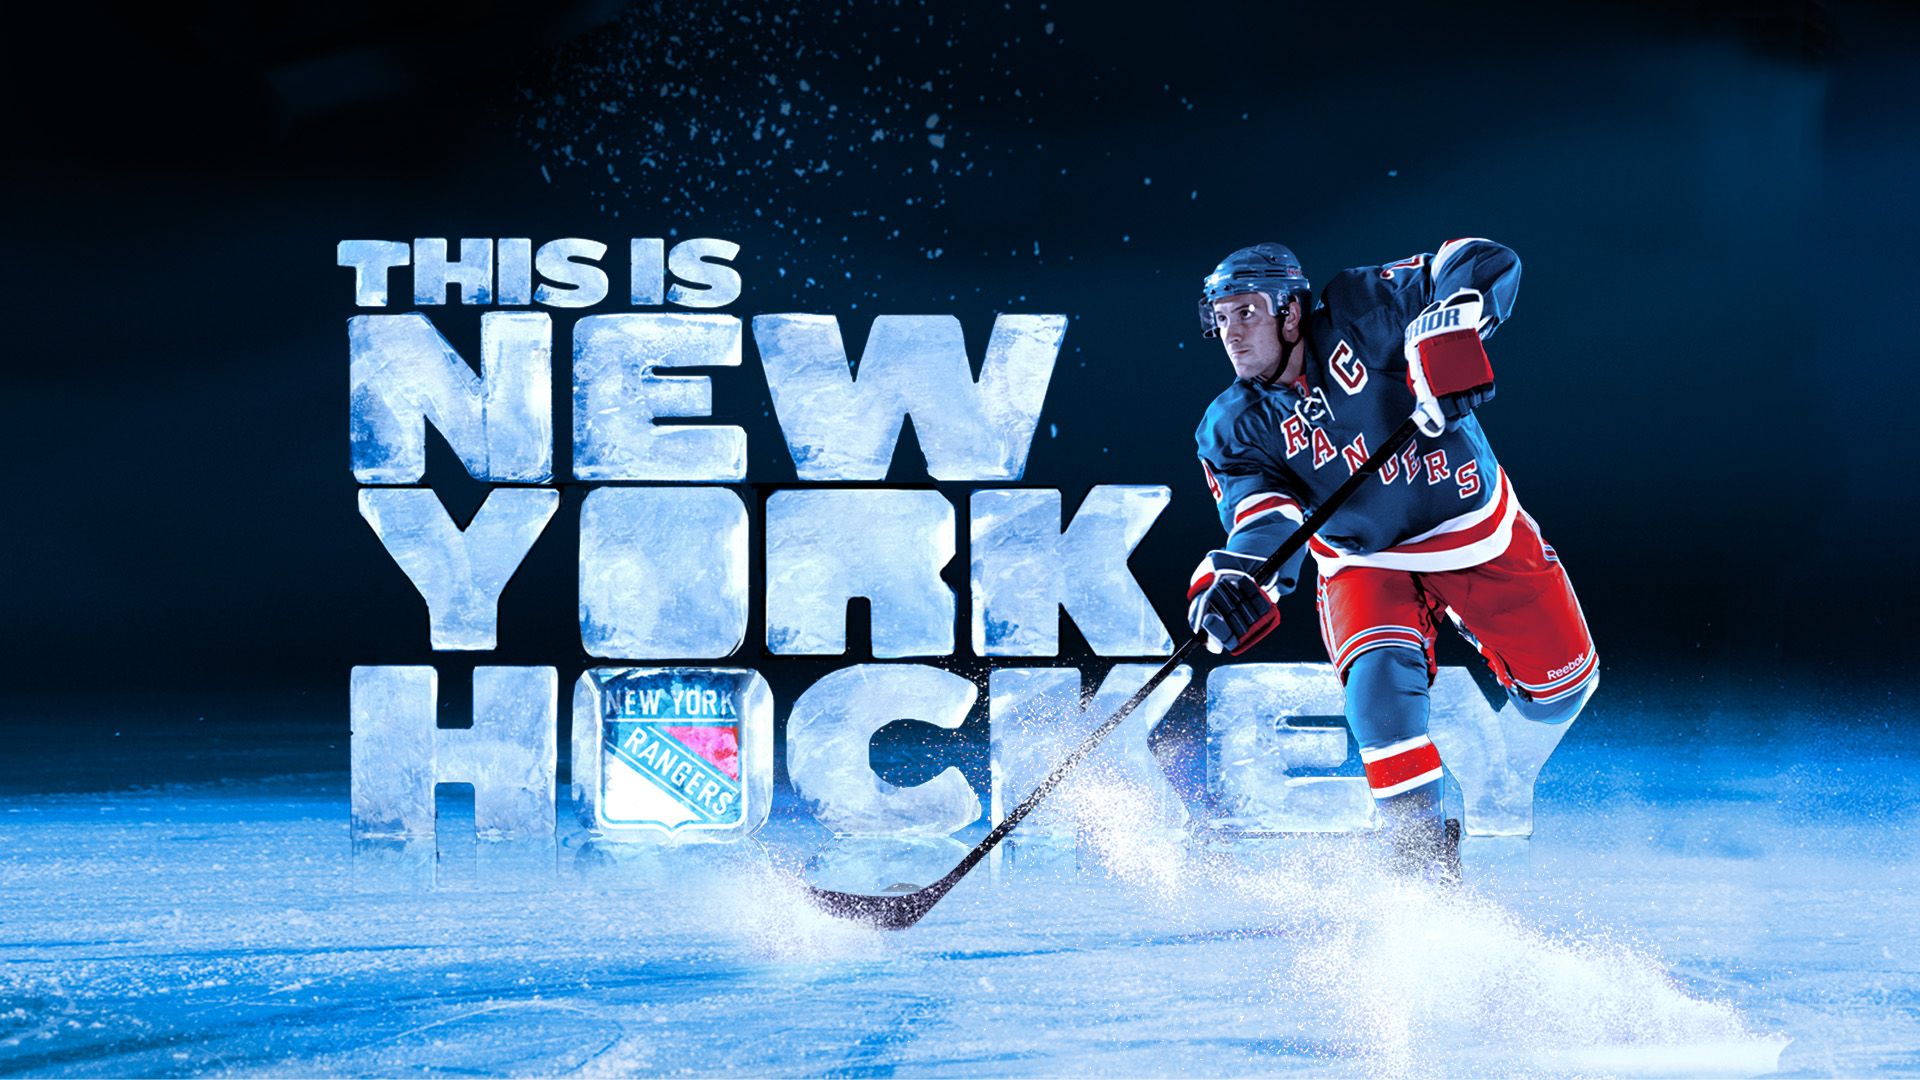 New York Rangers 2014-15 Schedule Wallpaper on Behance